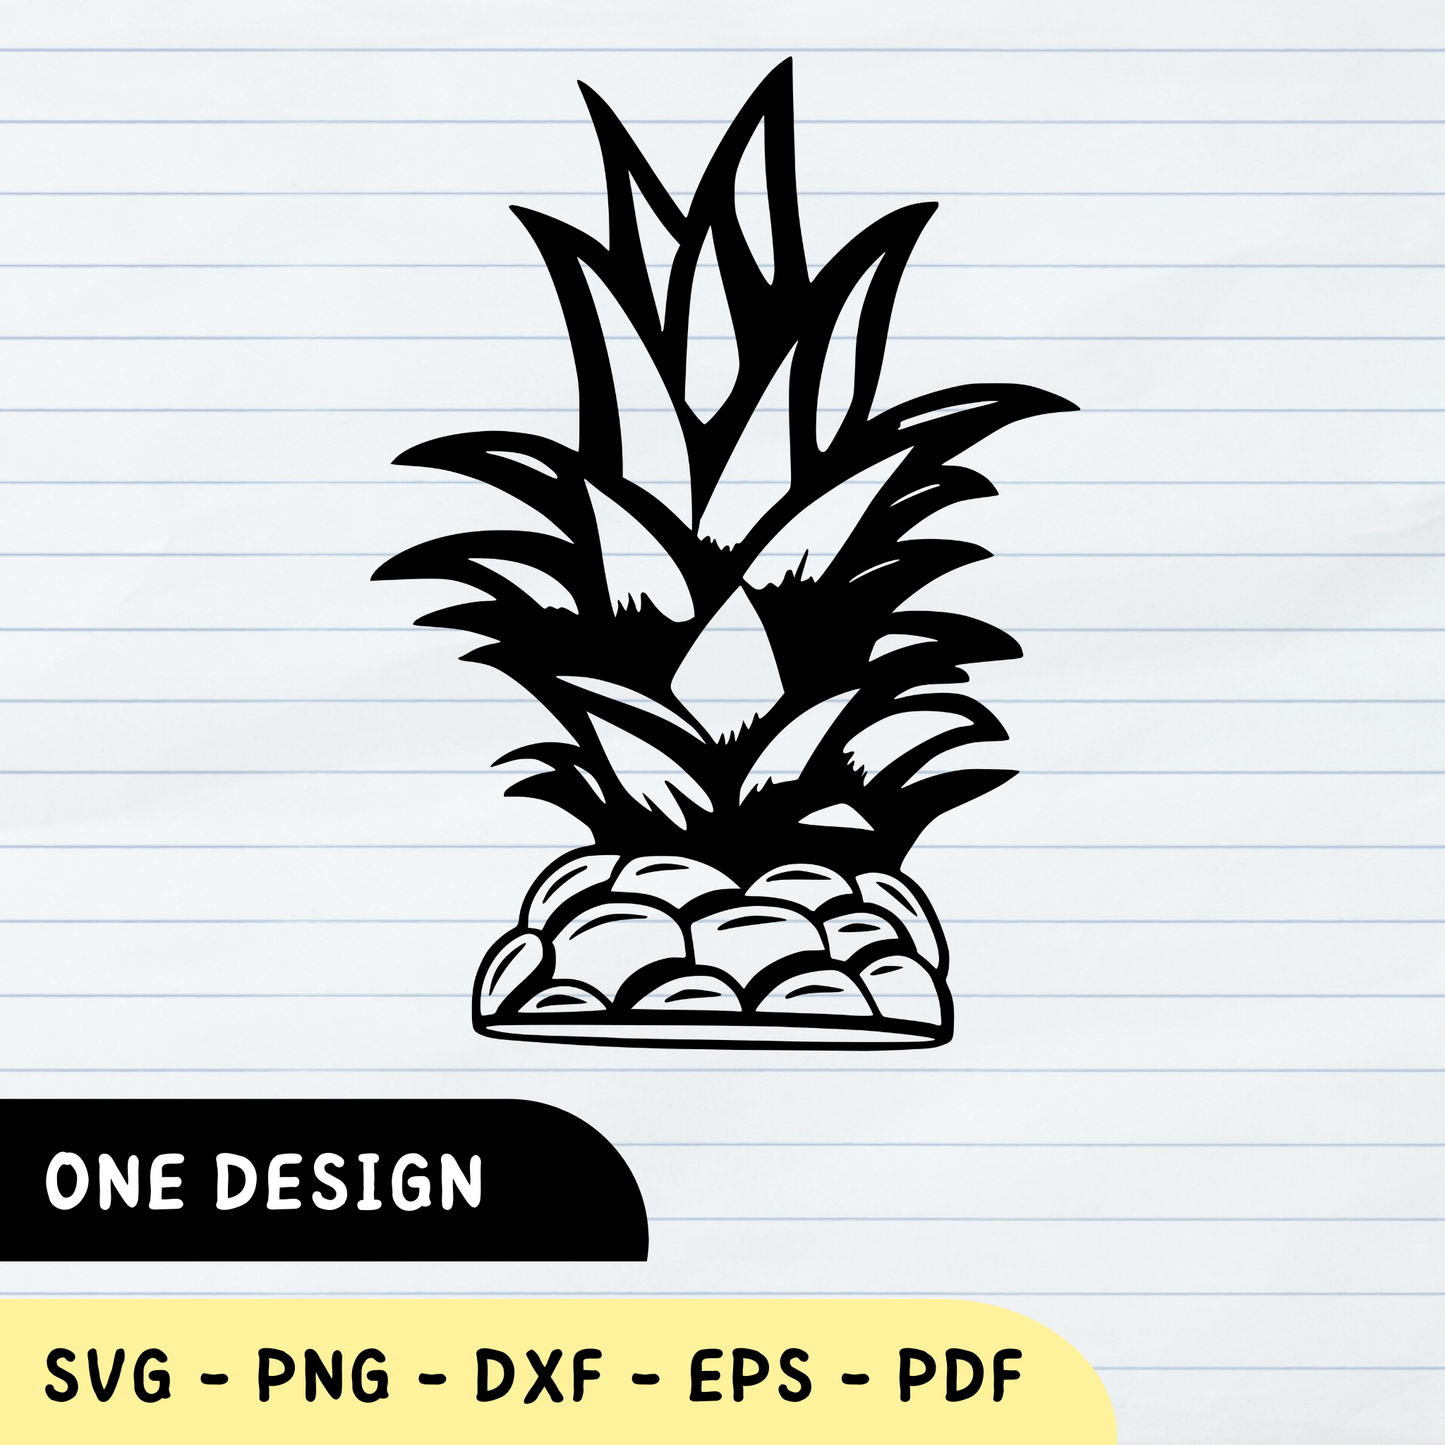 Half Pineapple SVG, Half Pineapple PNG, Half Pineapple Design, Half Pineapple Vector